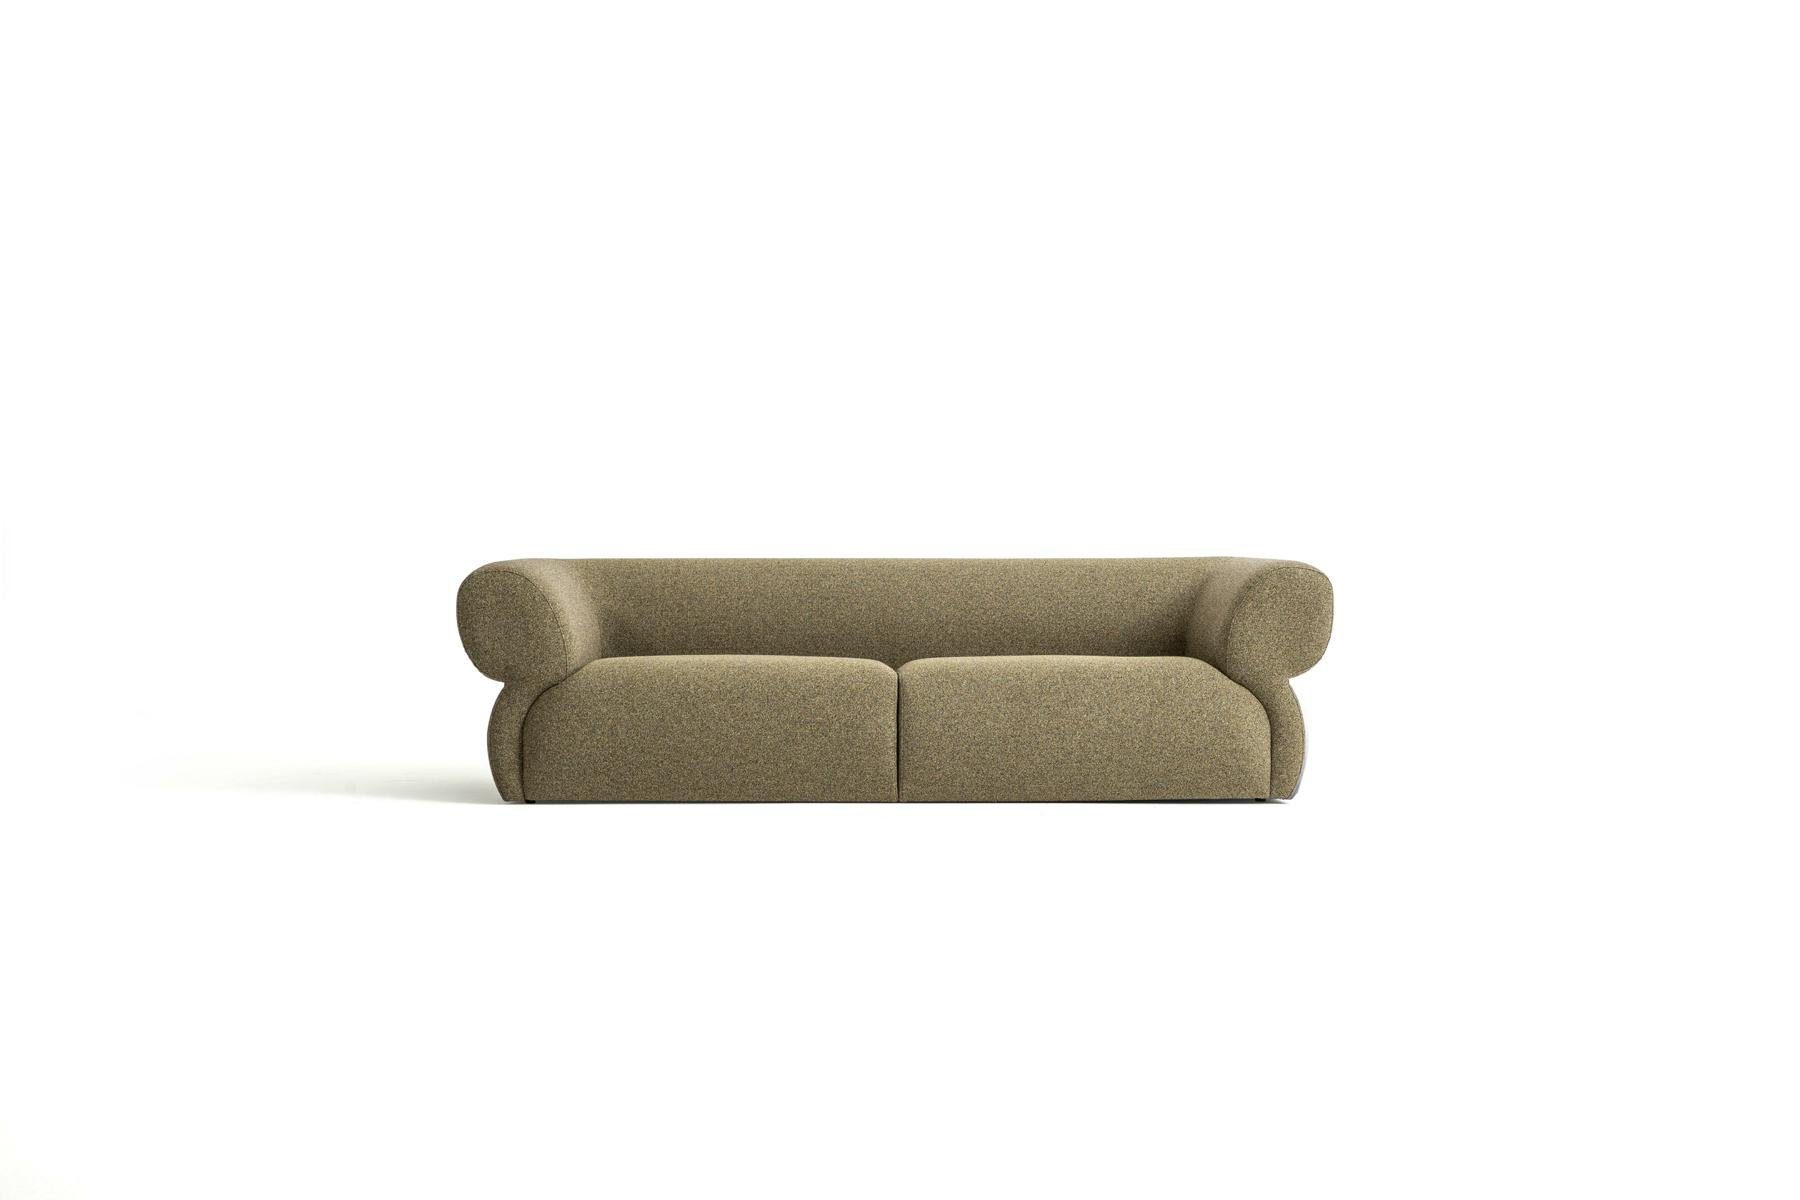 JVmoebel 3-Sitzer Luxus Sofa 3 Sitzer Möbel Wohnzimmer 250cm Design Polstersofa Neu, Made in Europe Braun